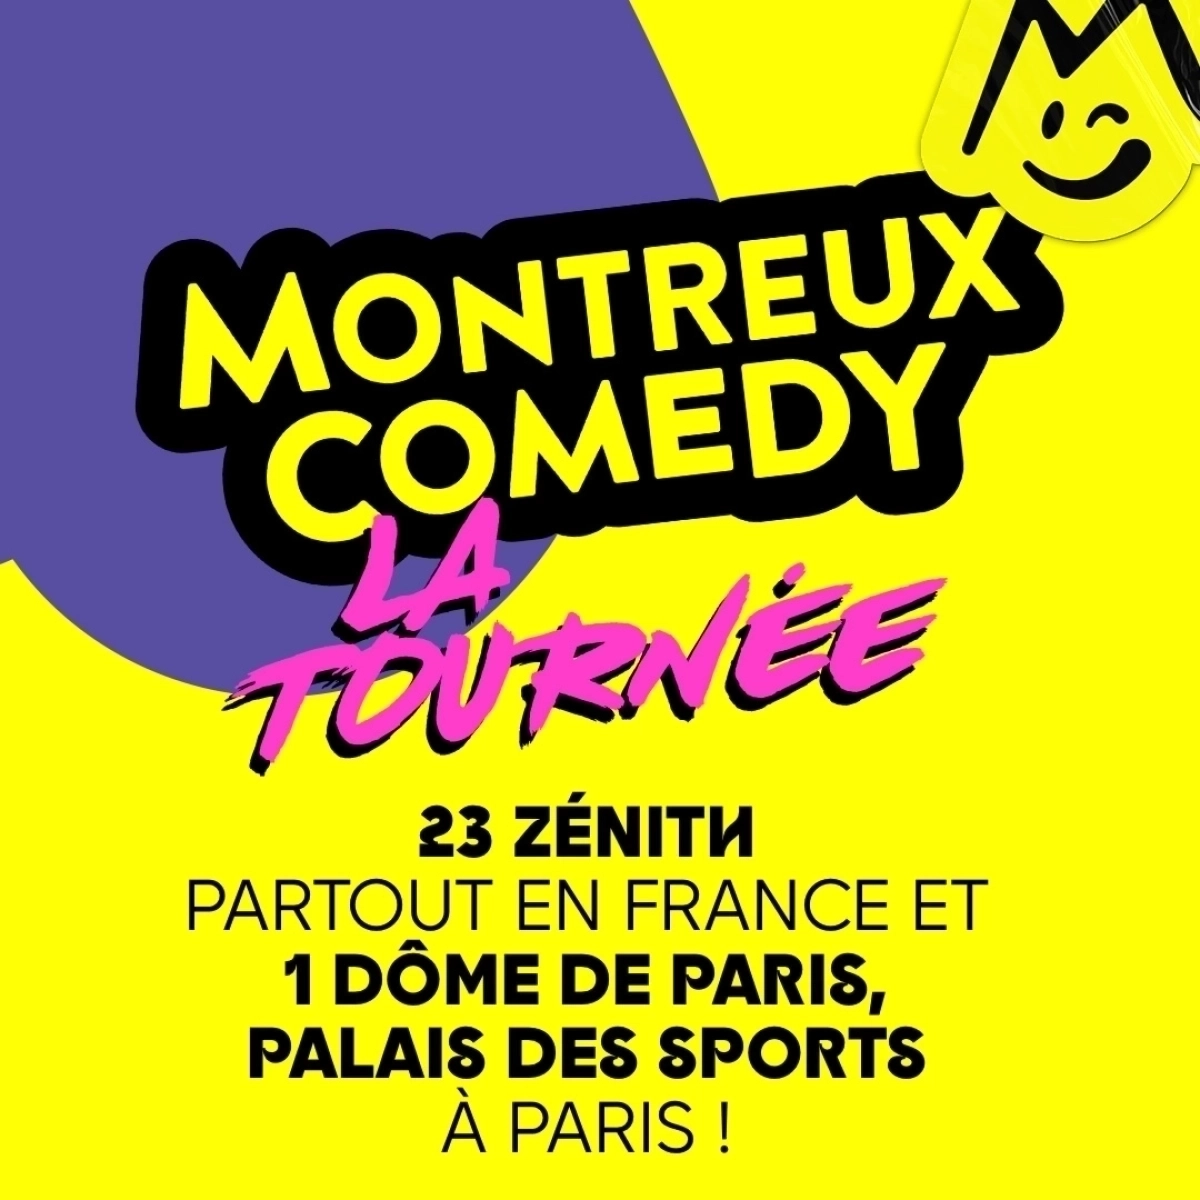 Montreux Comedy - La Tournée in der Zenith Omega Toulon Tickets